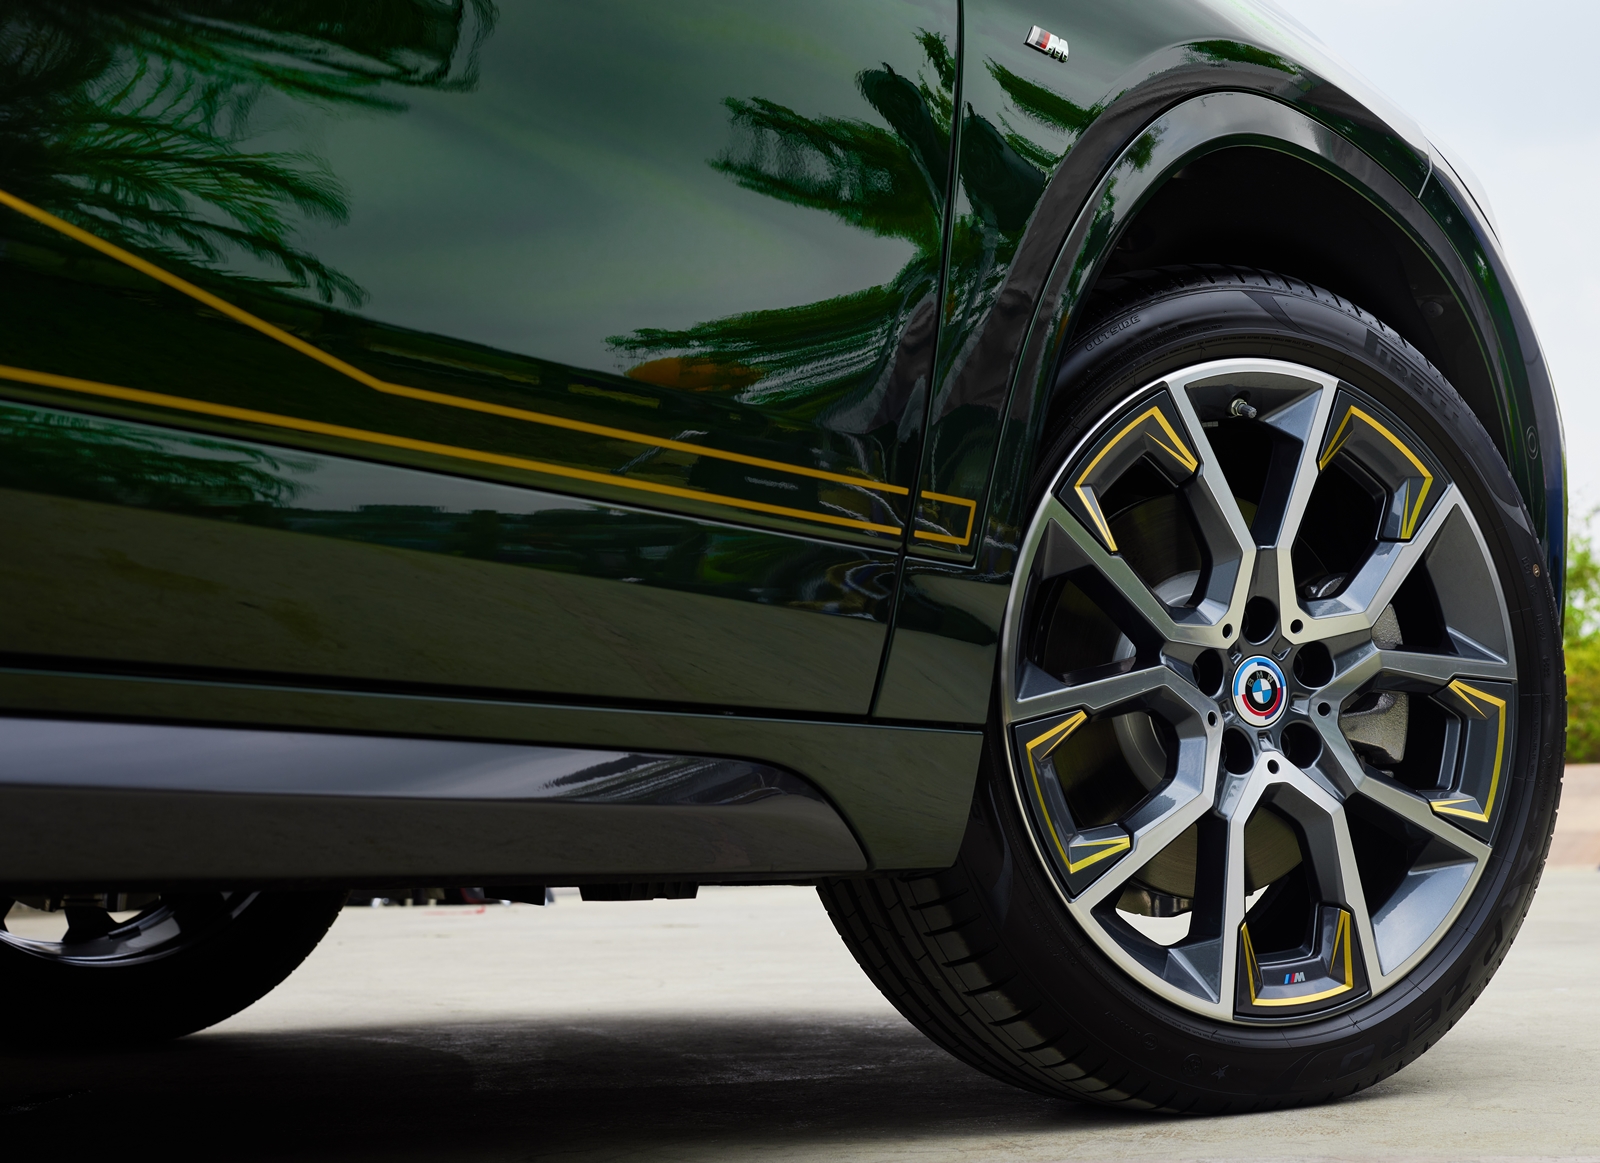 [新聞照片四] 全新BMW X2 GoldPlay Edition標配M空力套件以及M擾流尾翼，搭配與車身同色的輪拱、側裙以及GoldPlay Edition專屬Galvanic Gold鍍金色鑲嵌19吋輪圈，塑造出運動風格強烈的跑車化外觀.jpg